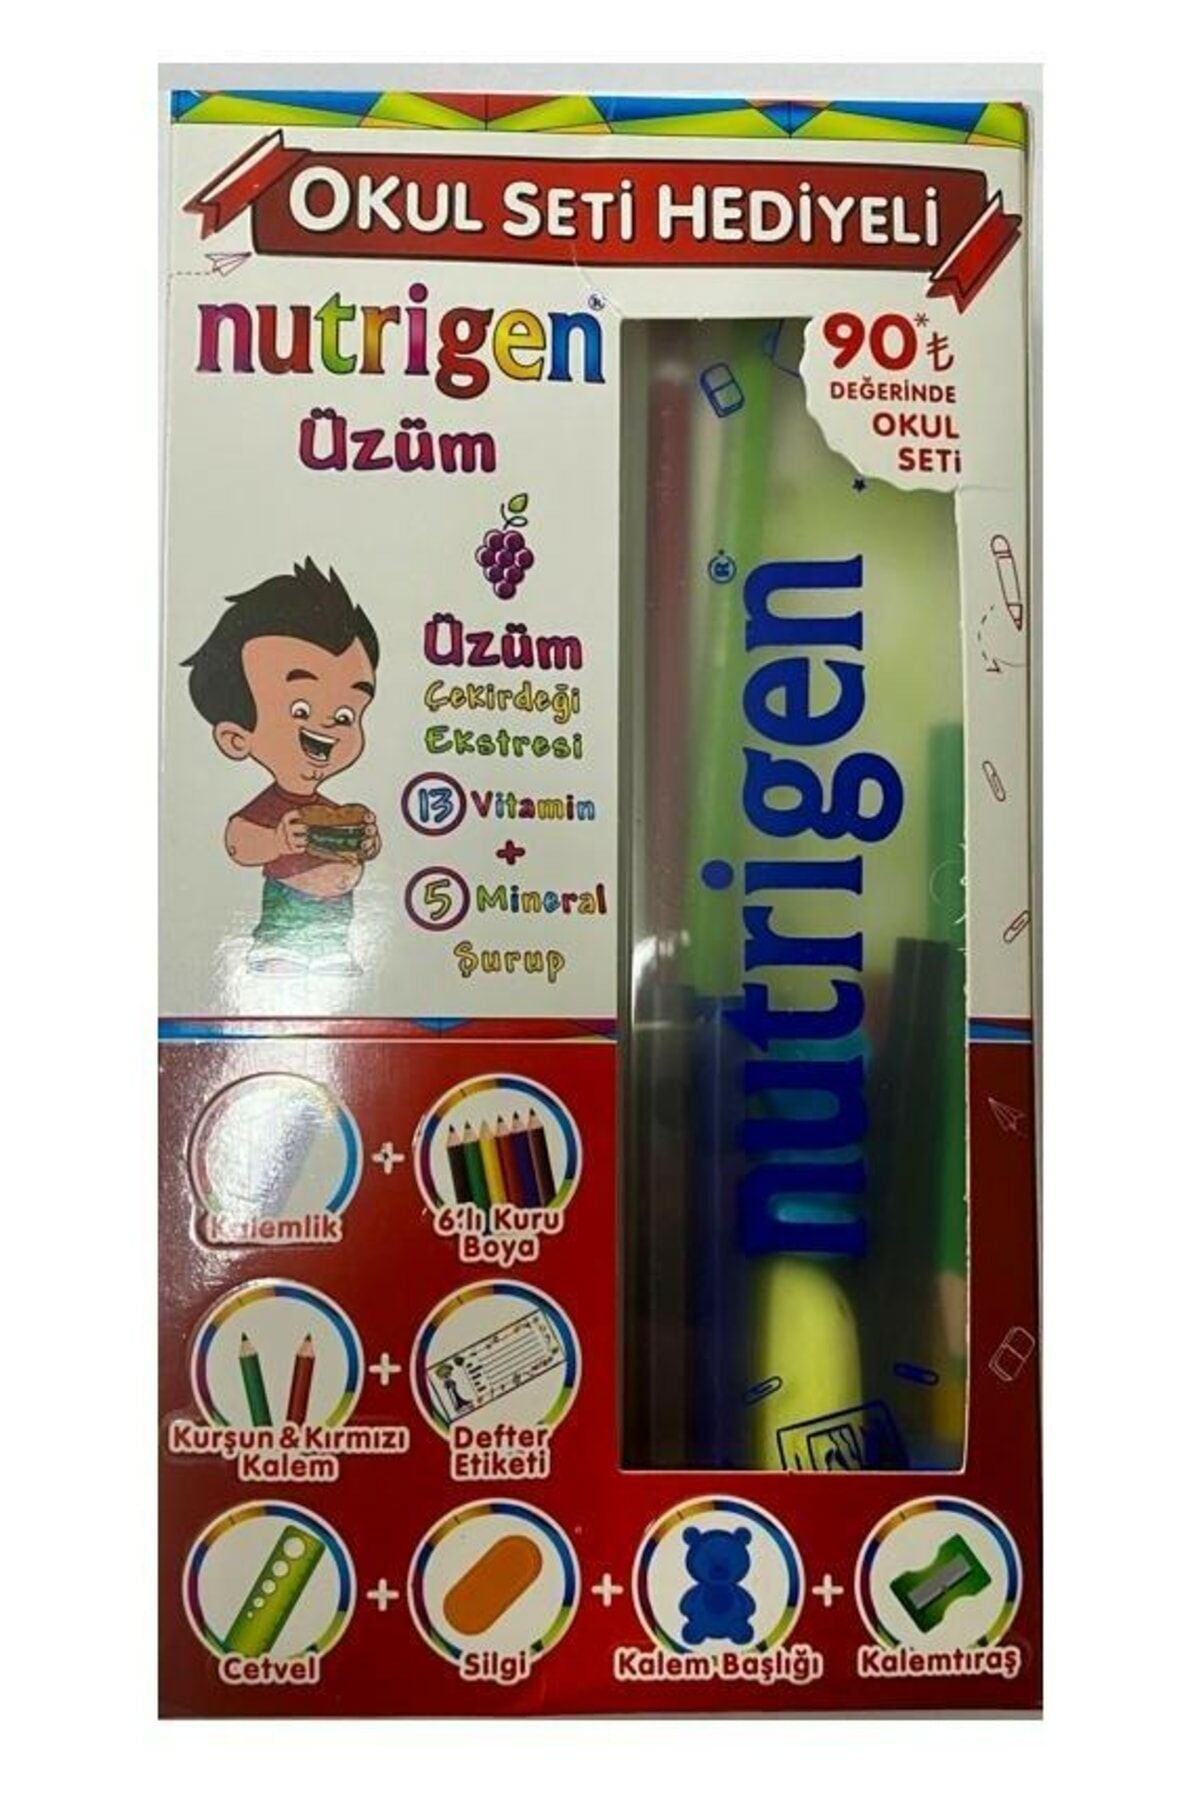 Nutrigen Üzüm Pediatrik Şurup 200 ml - Okul Seti ve Poşet 22x33 cm 50'li Hediyeli